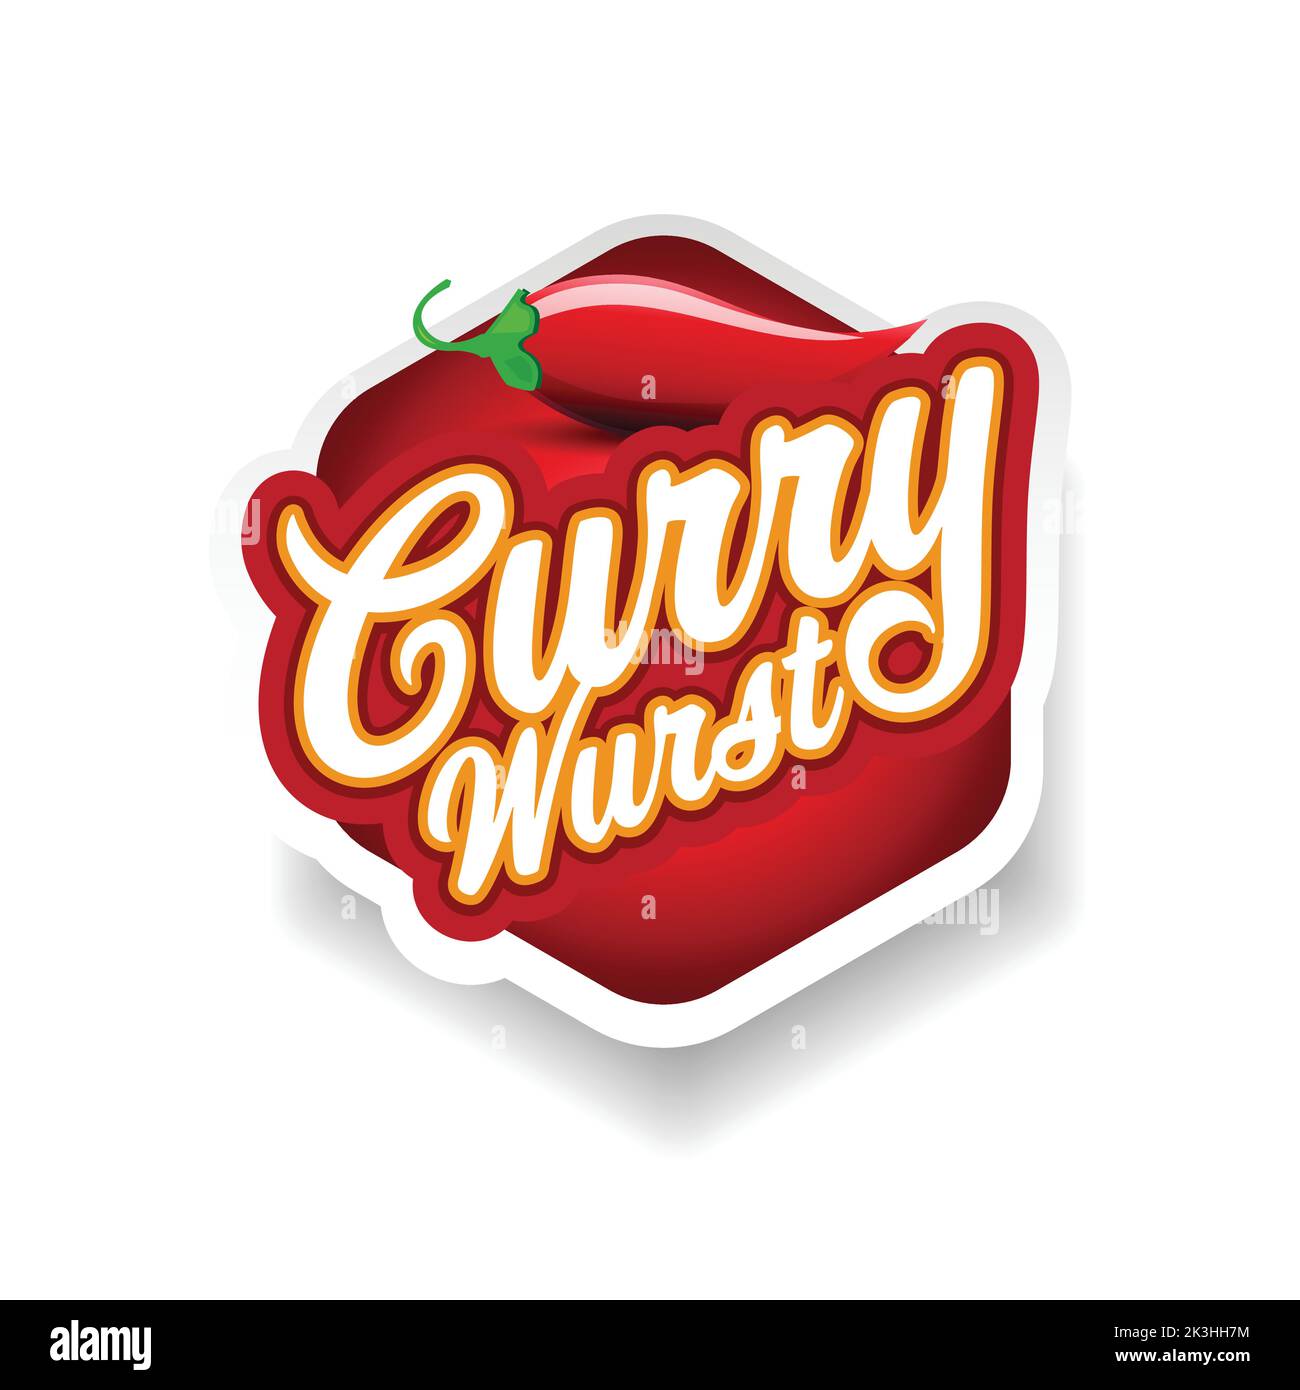 Cartello con scritto curry Wurst german food Illustrazione Vettoriale